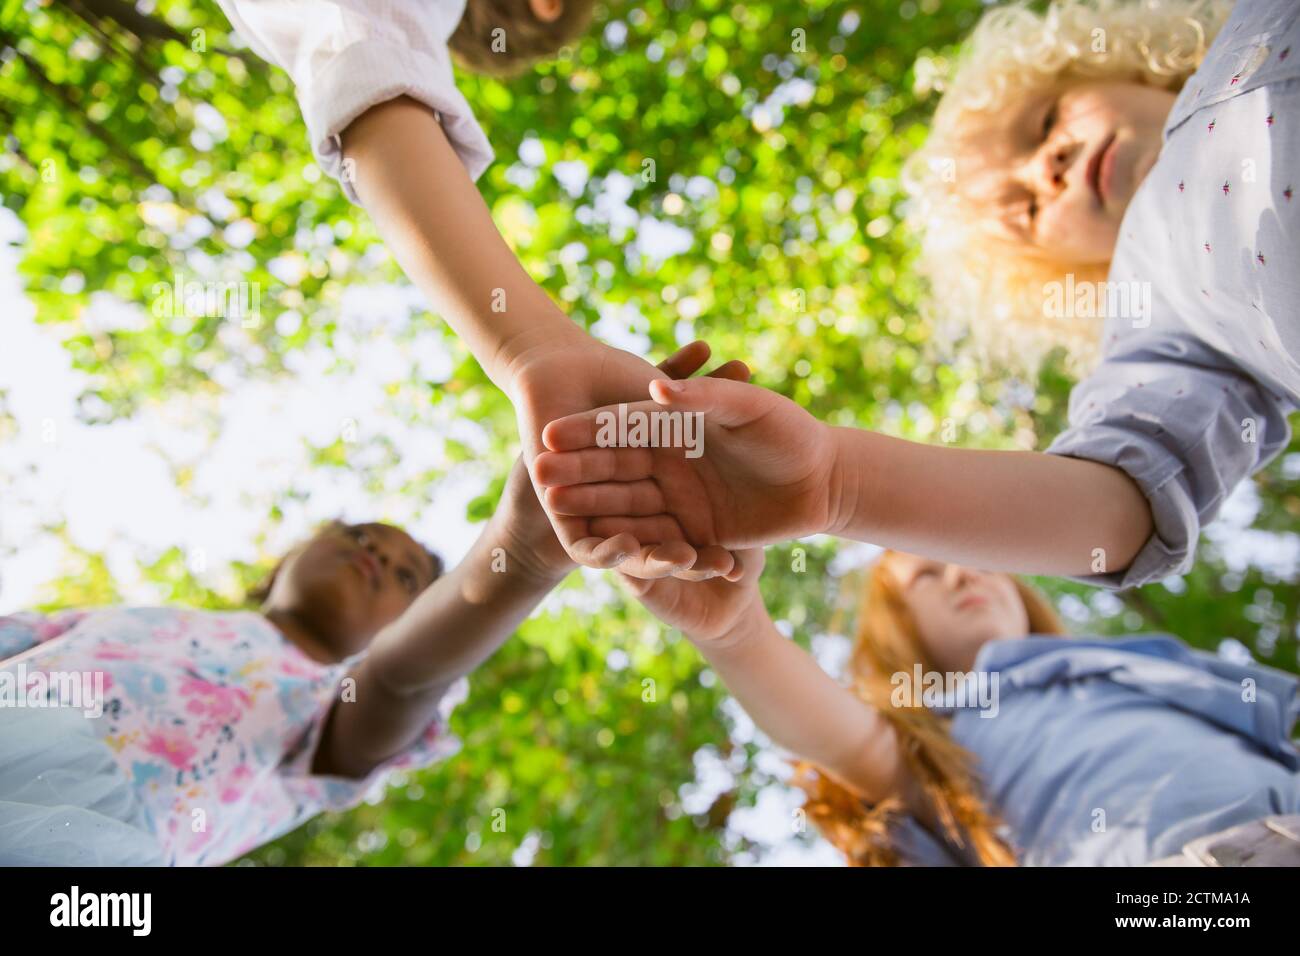 Équipe de rêve. Groupe interracial d'enfants, de filles et de garçons jouant ensemble au parc en été. L'amitié n'a pas de race. Concept de bonheur, d'enfance, d'éducation, de diversité. Soyez heureux et sincère. Banque D'Images